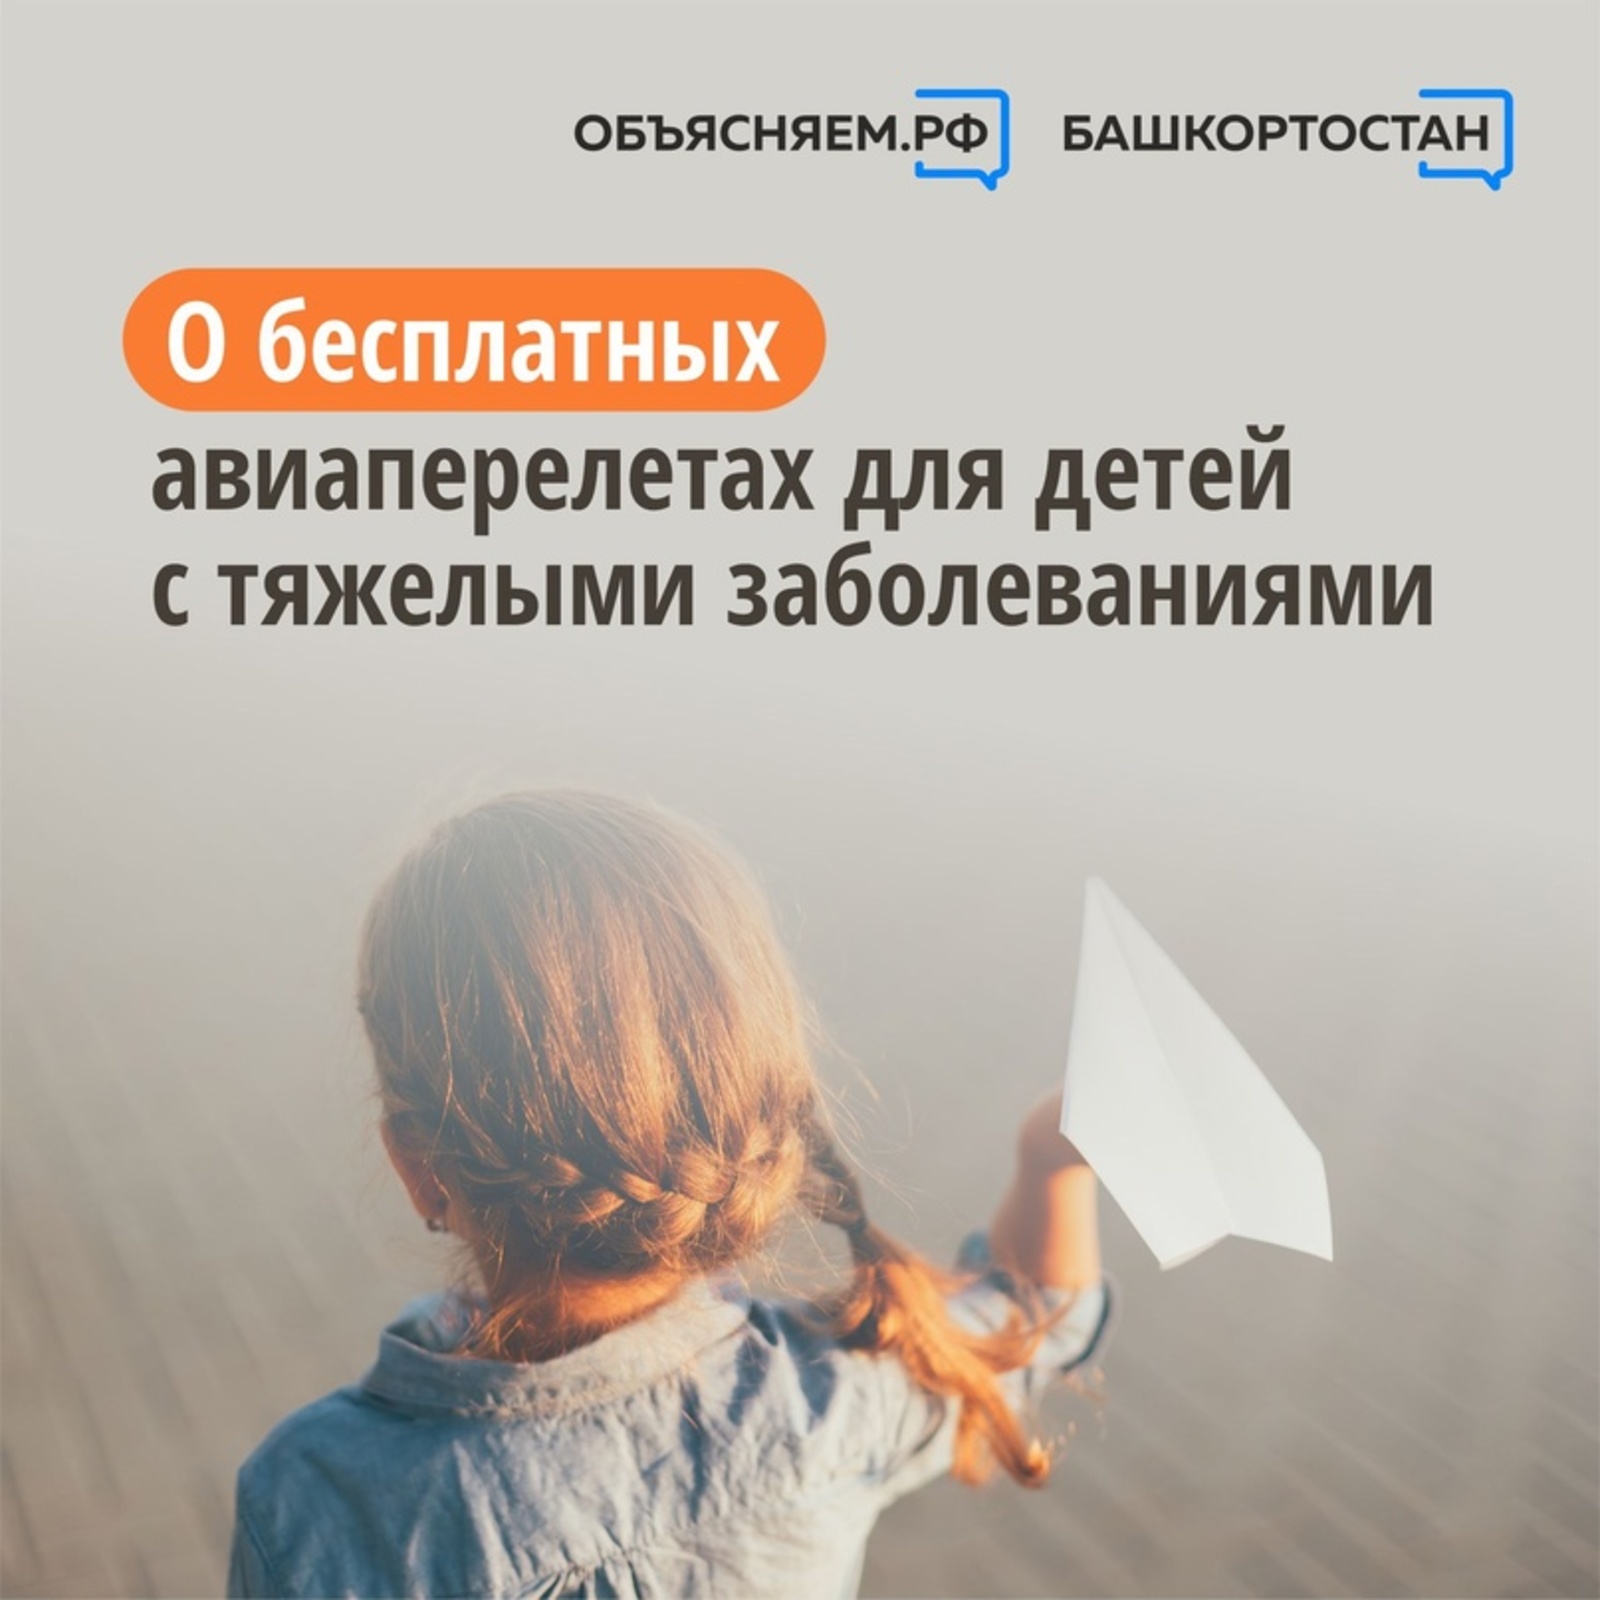 Специалисты Социального фонда в Башкирии объясняют о возможности бесплатных перелетов детей с тяжелыми заболеваниями